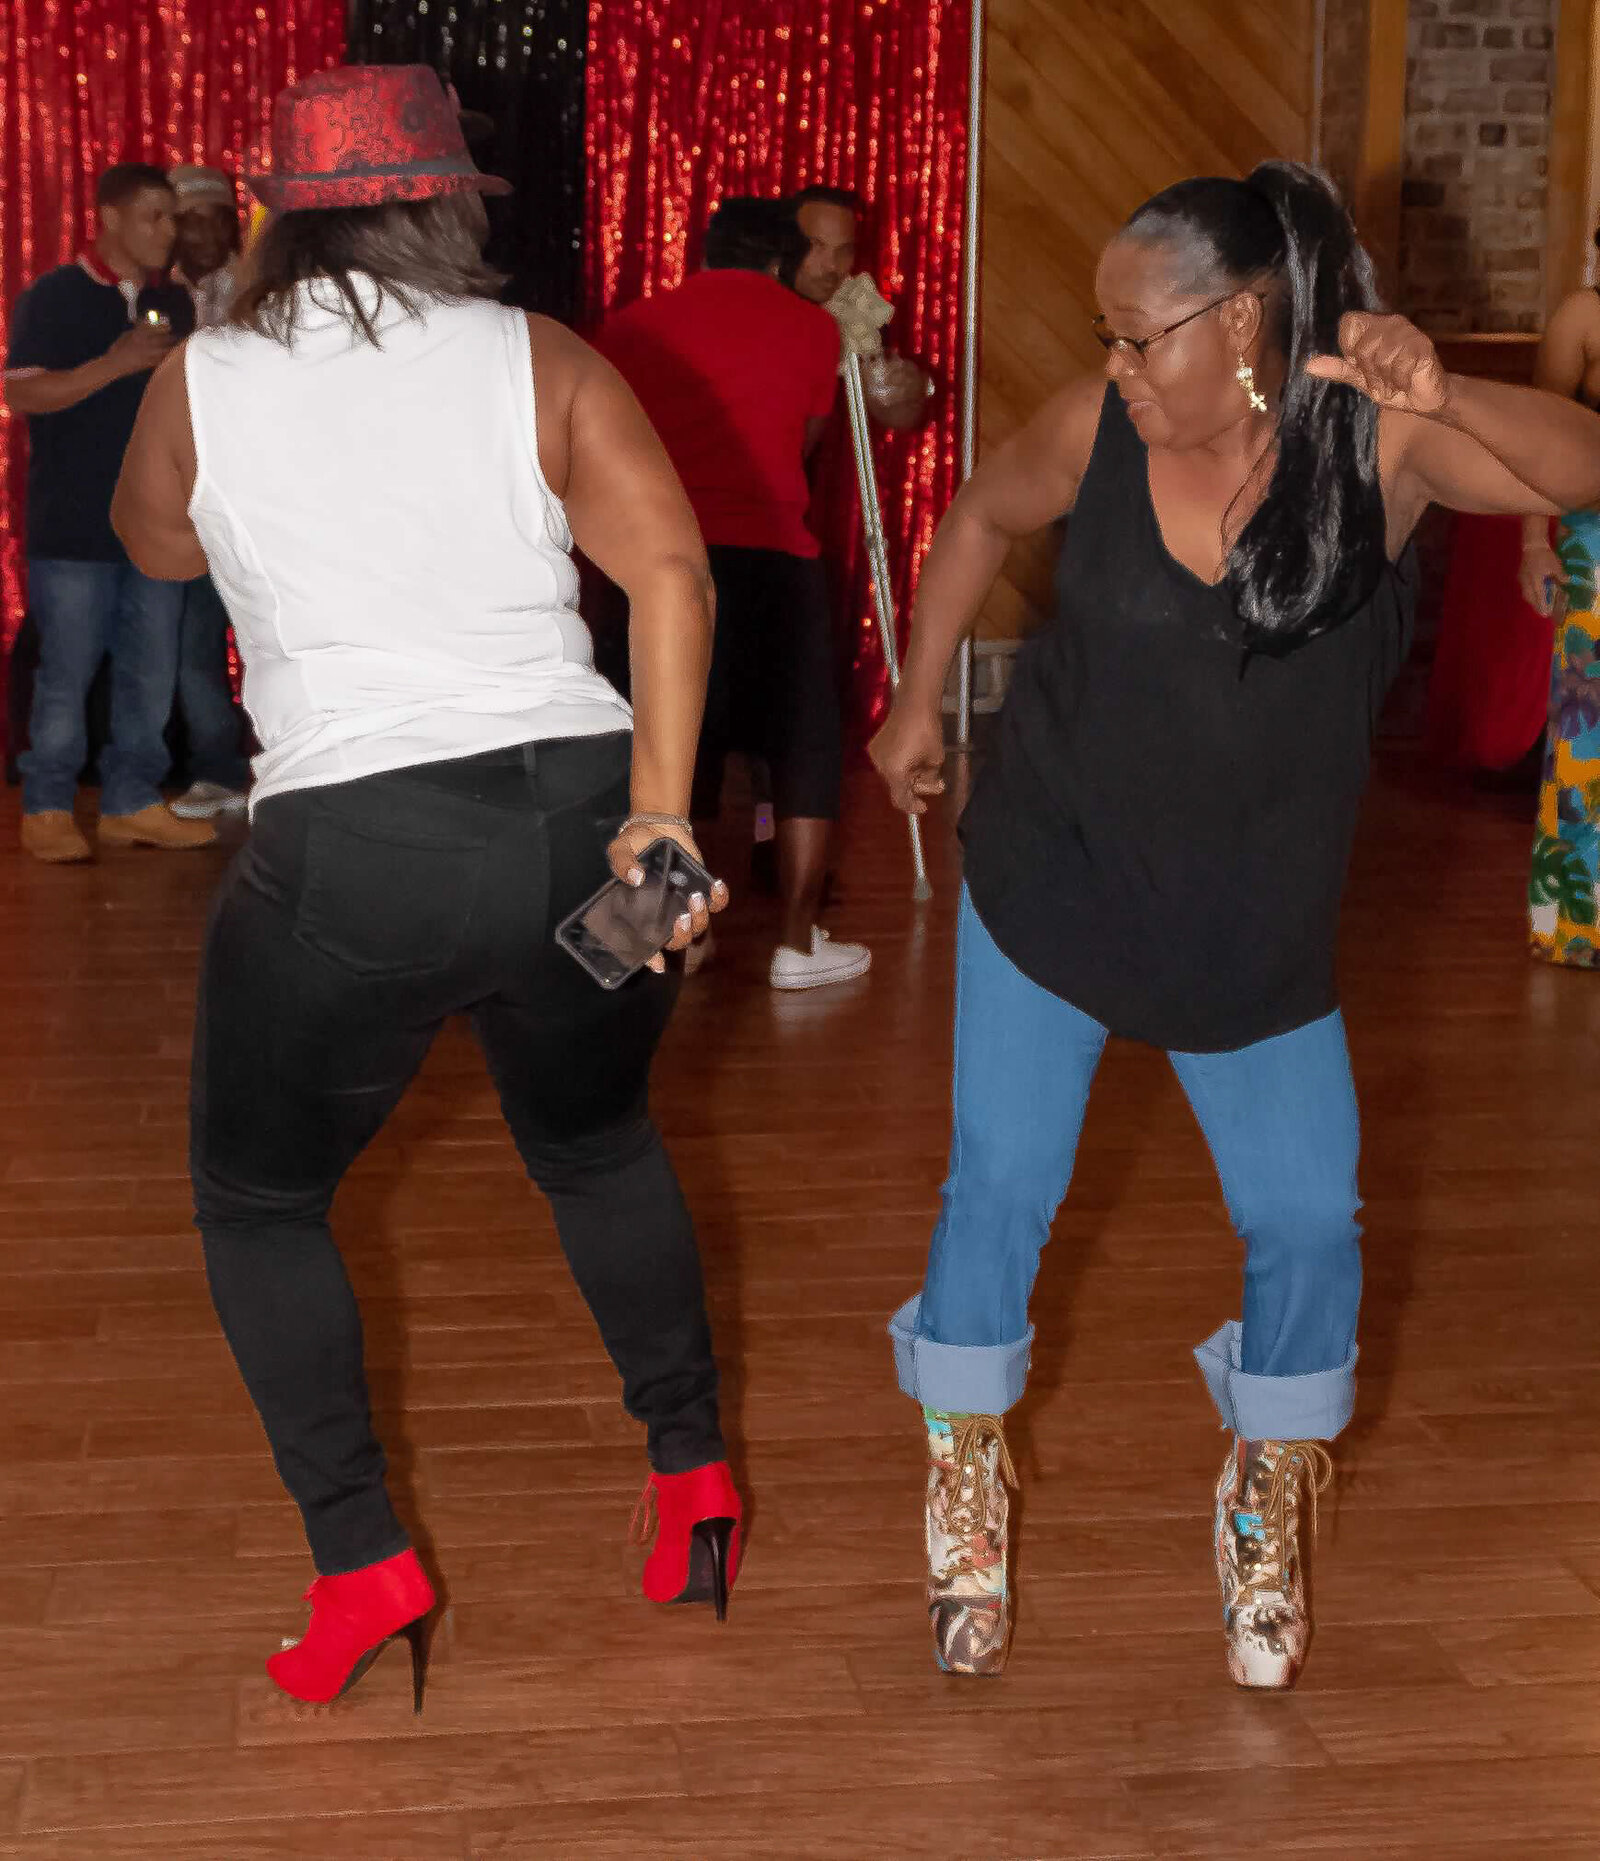 ladies dance on dance floor